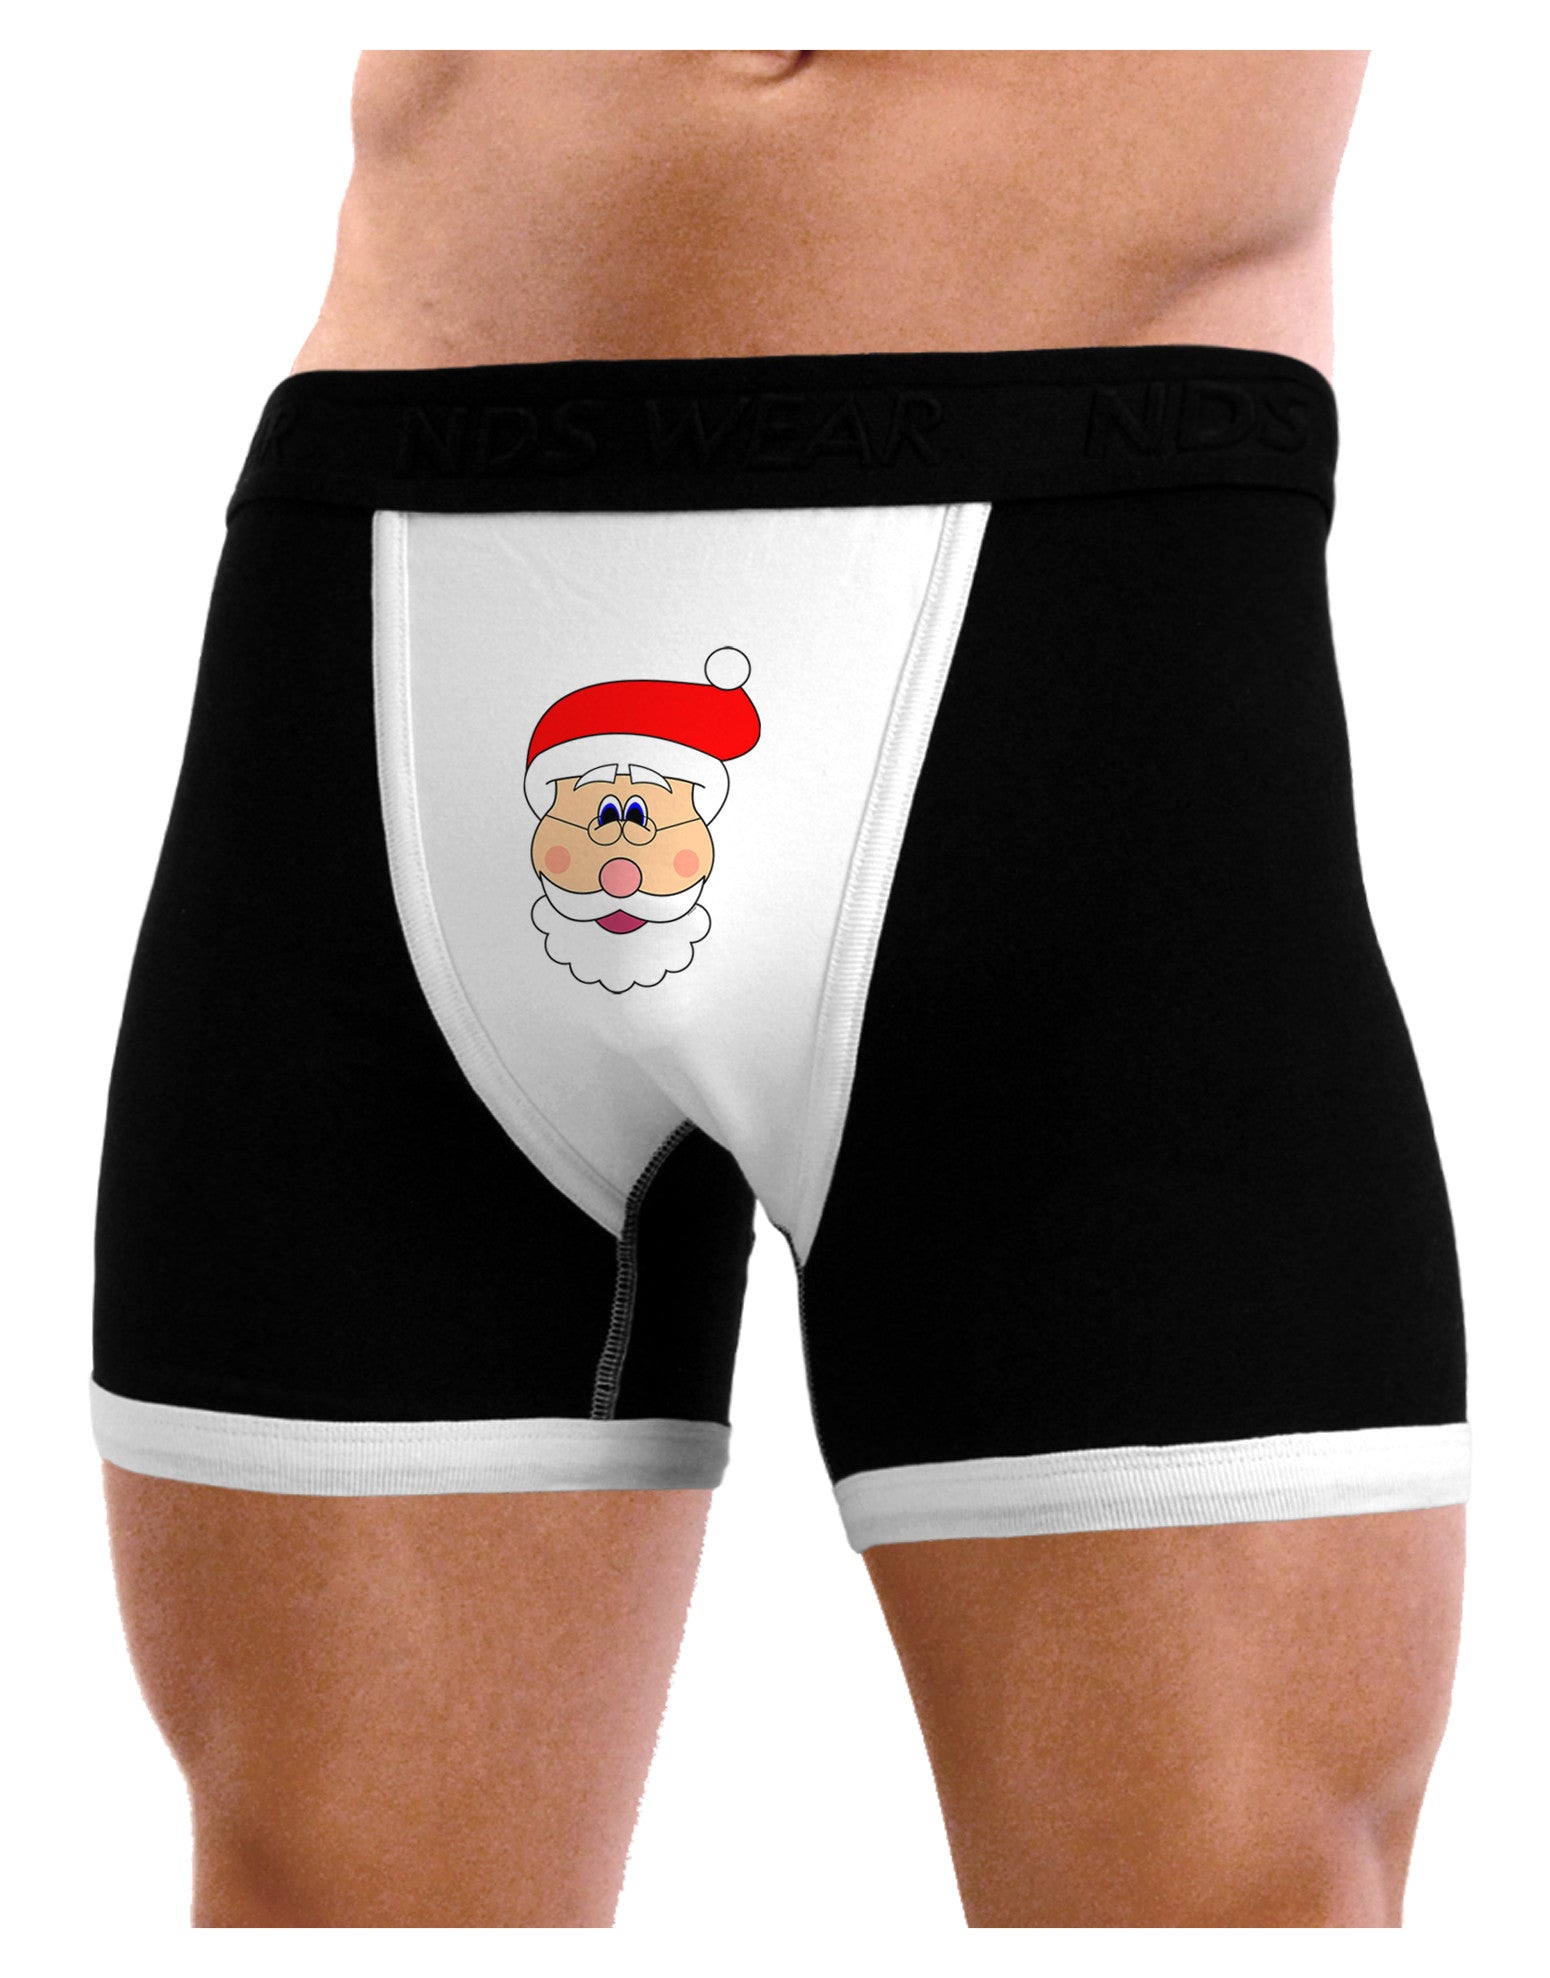 Christmas Face Boxers, Santa Face Boxer Shorts, Holiday Photo